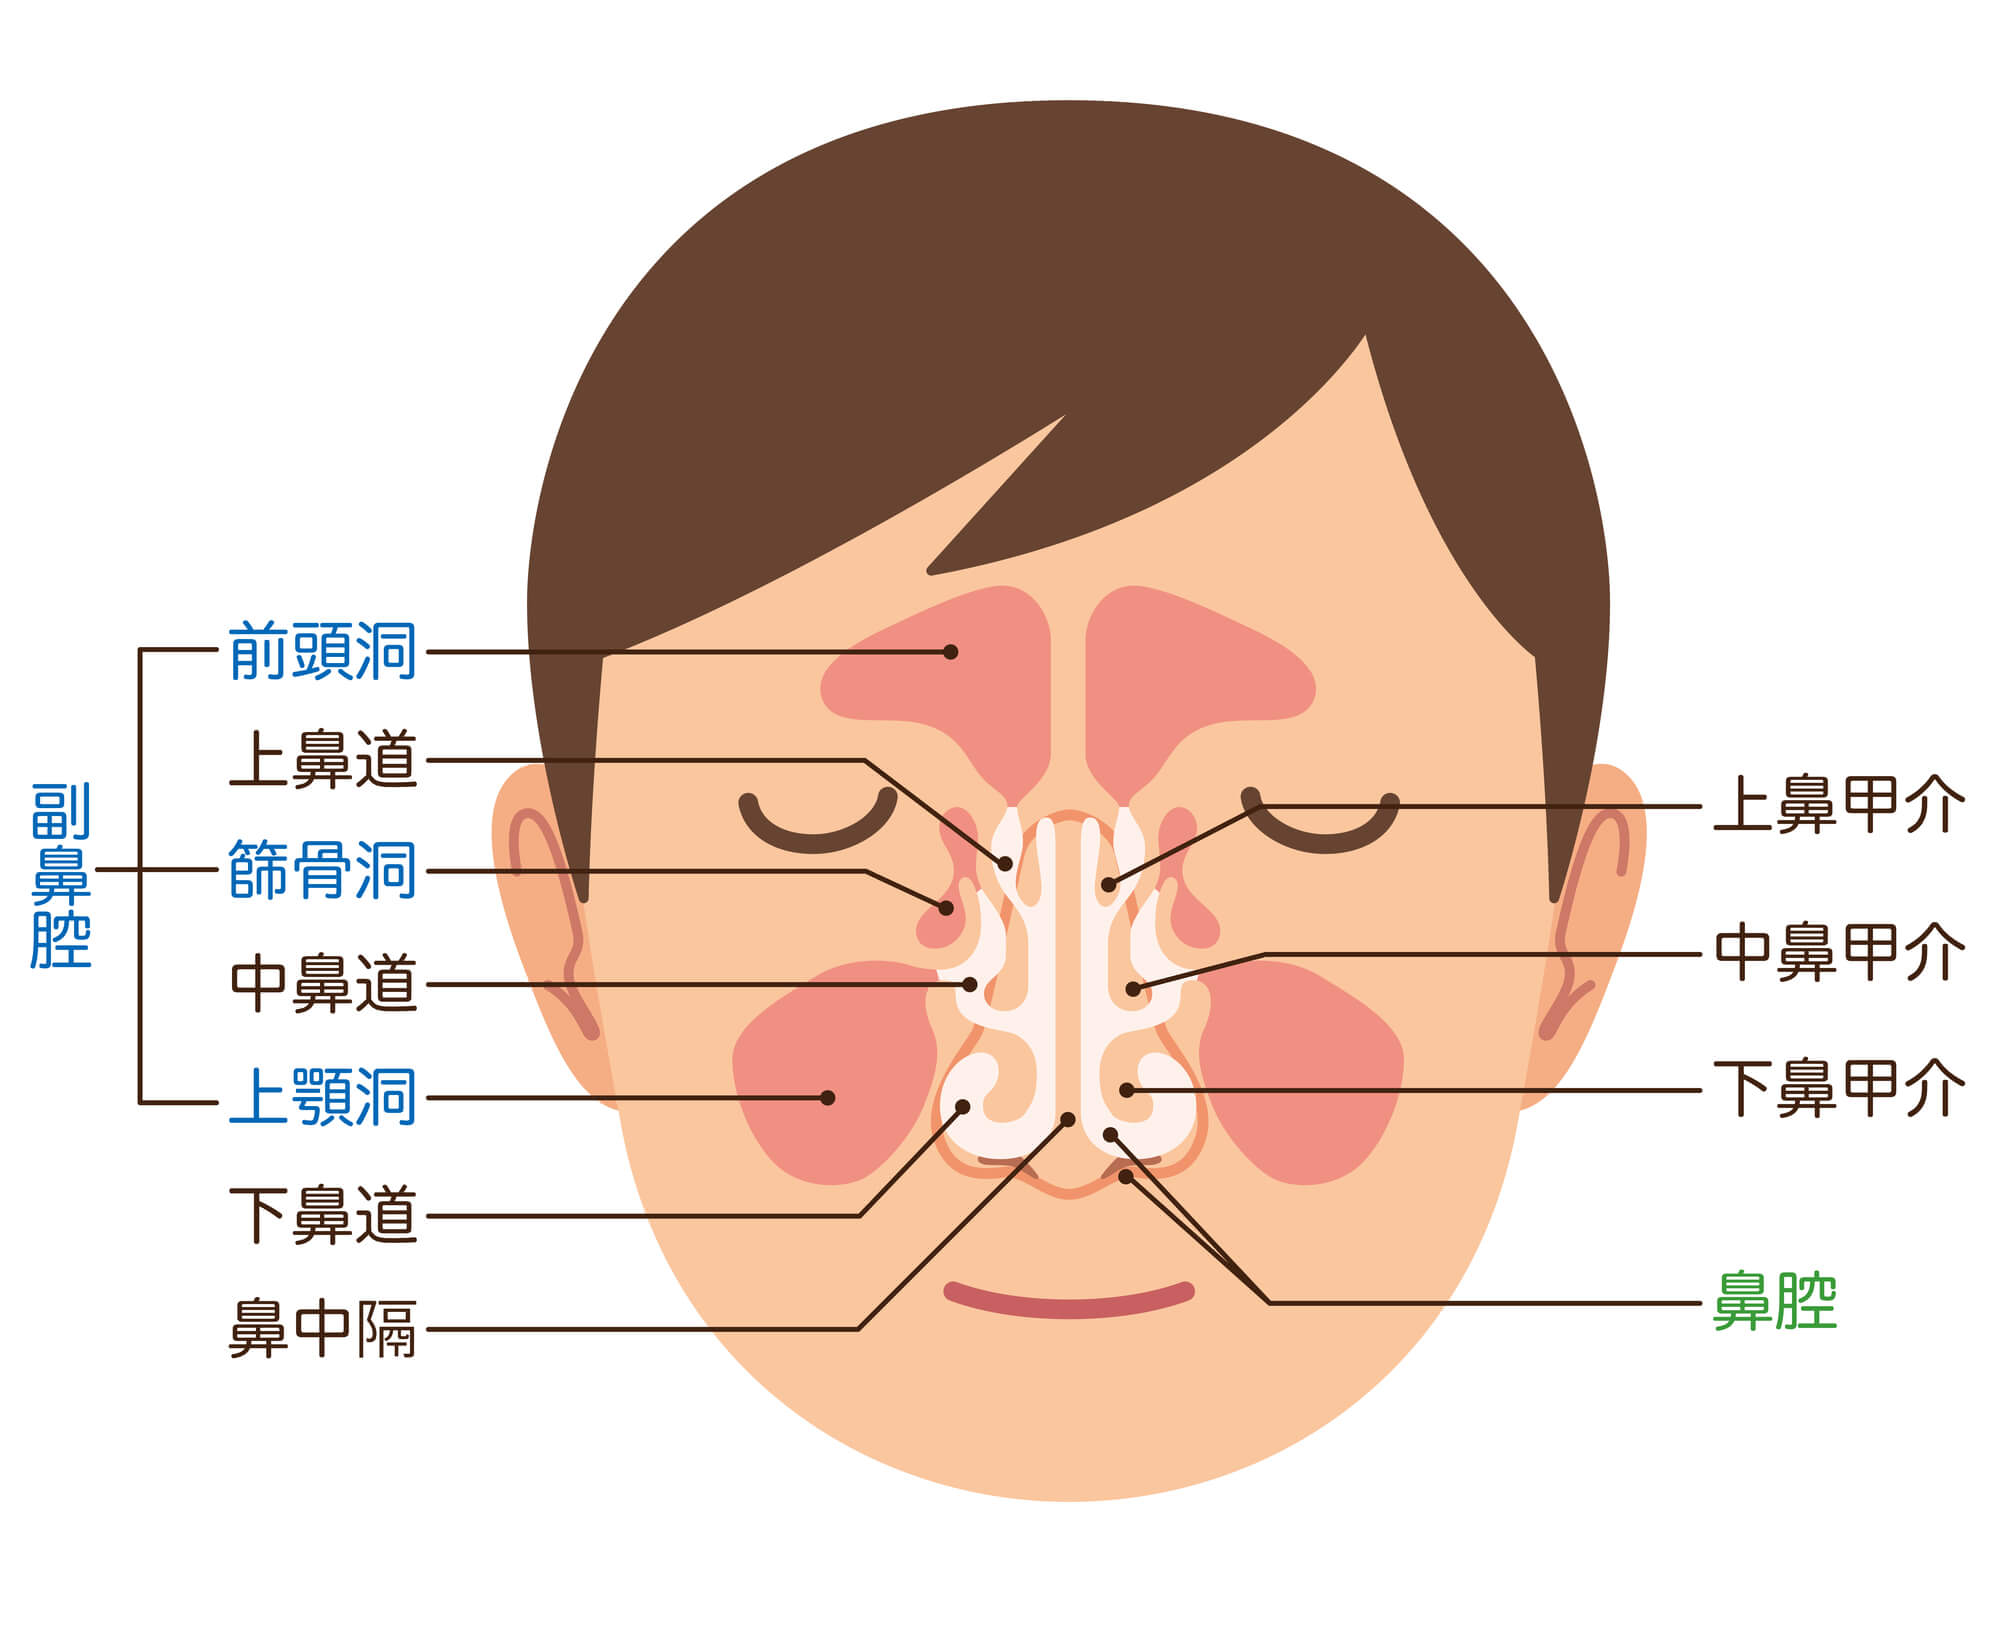 副鼻腔の構造